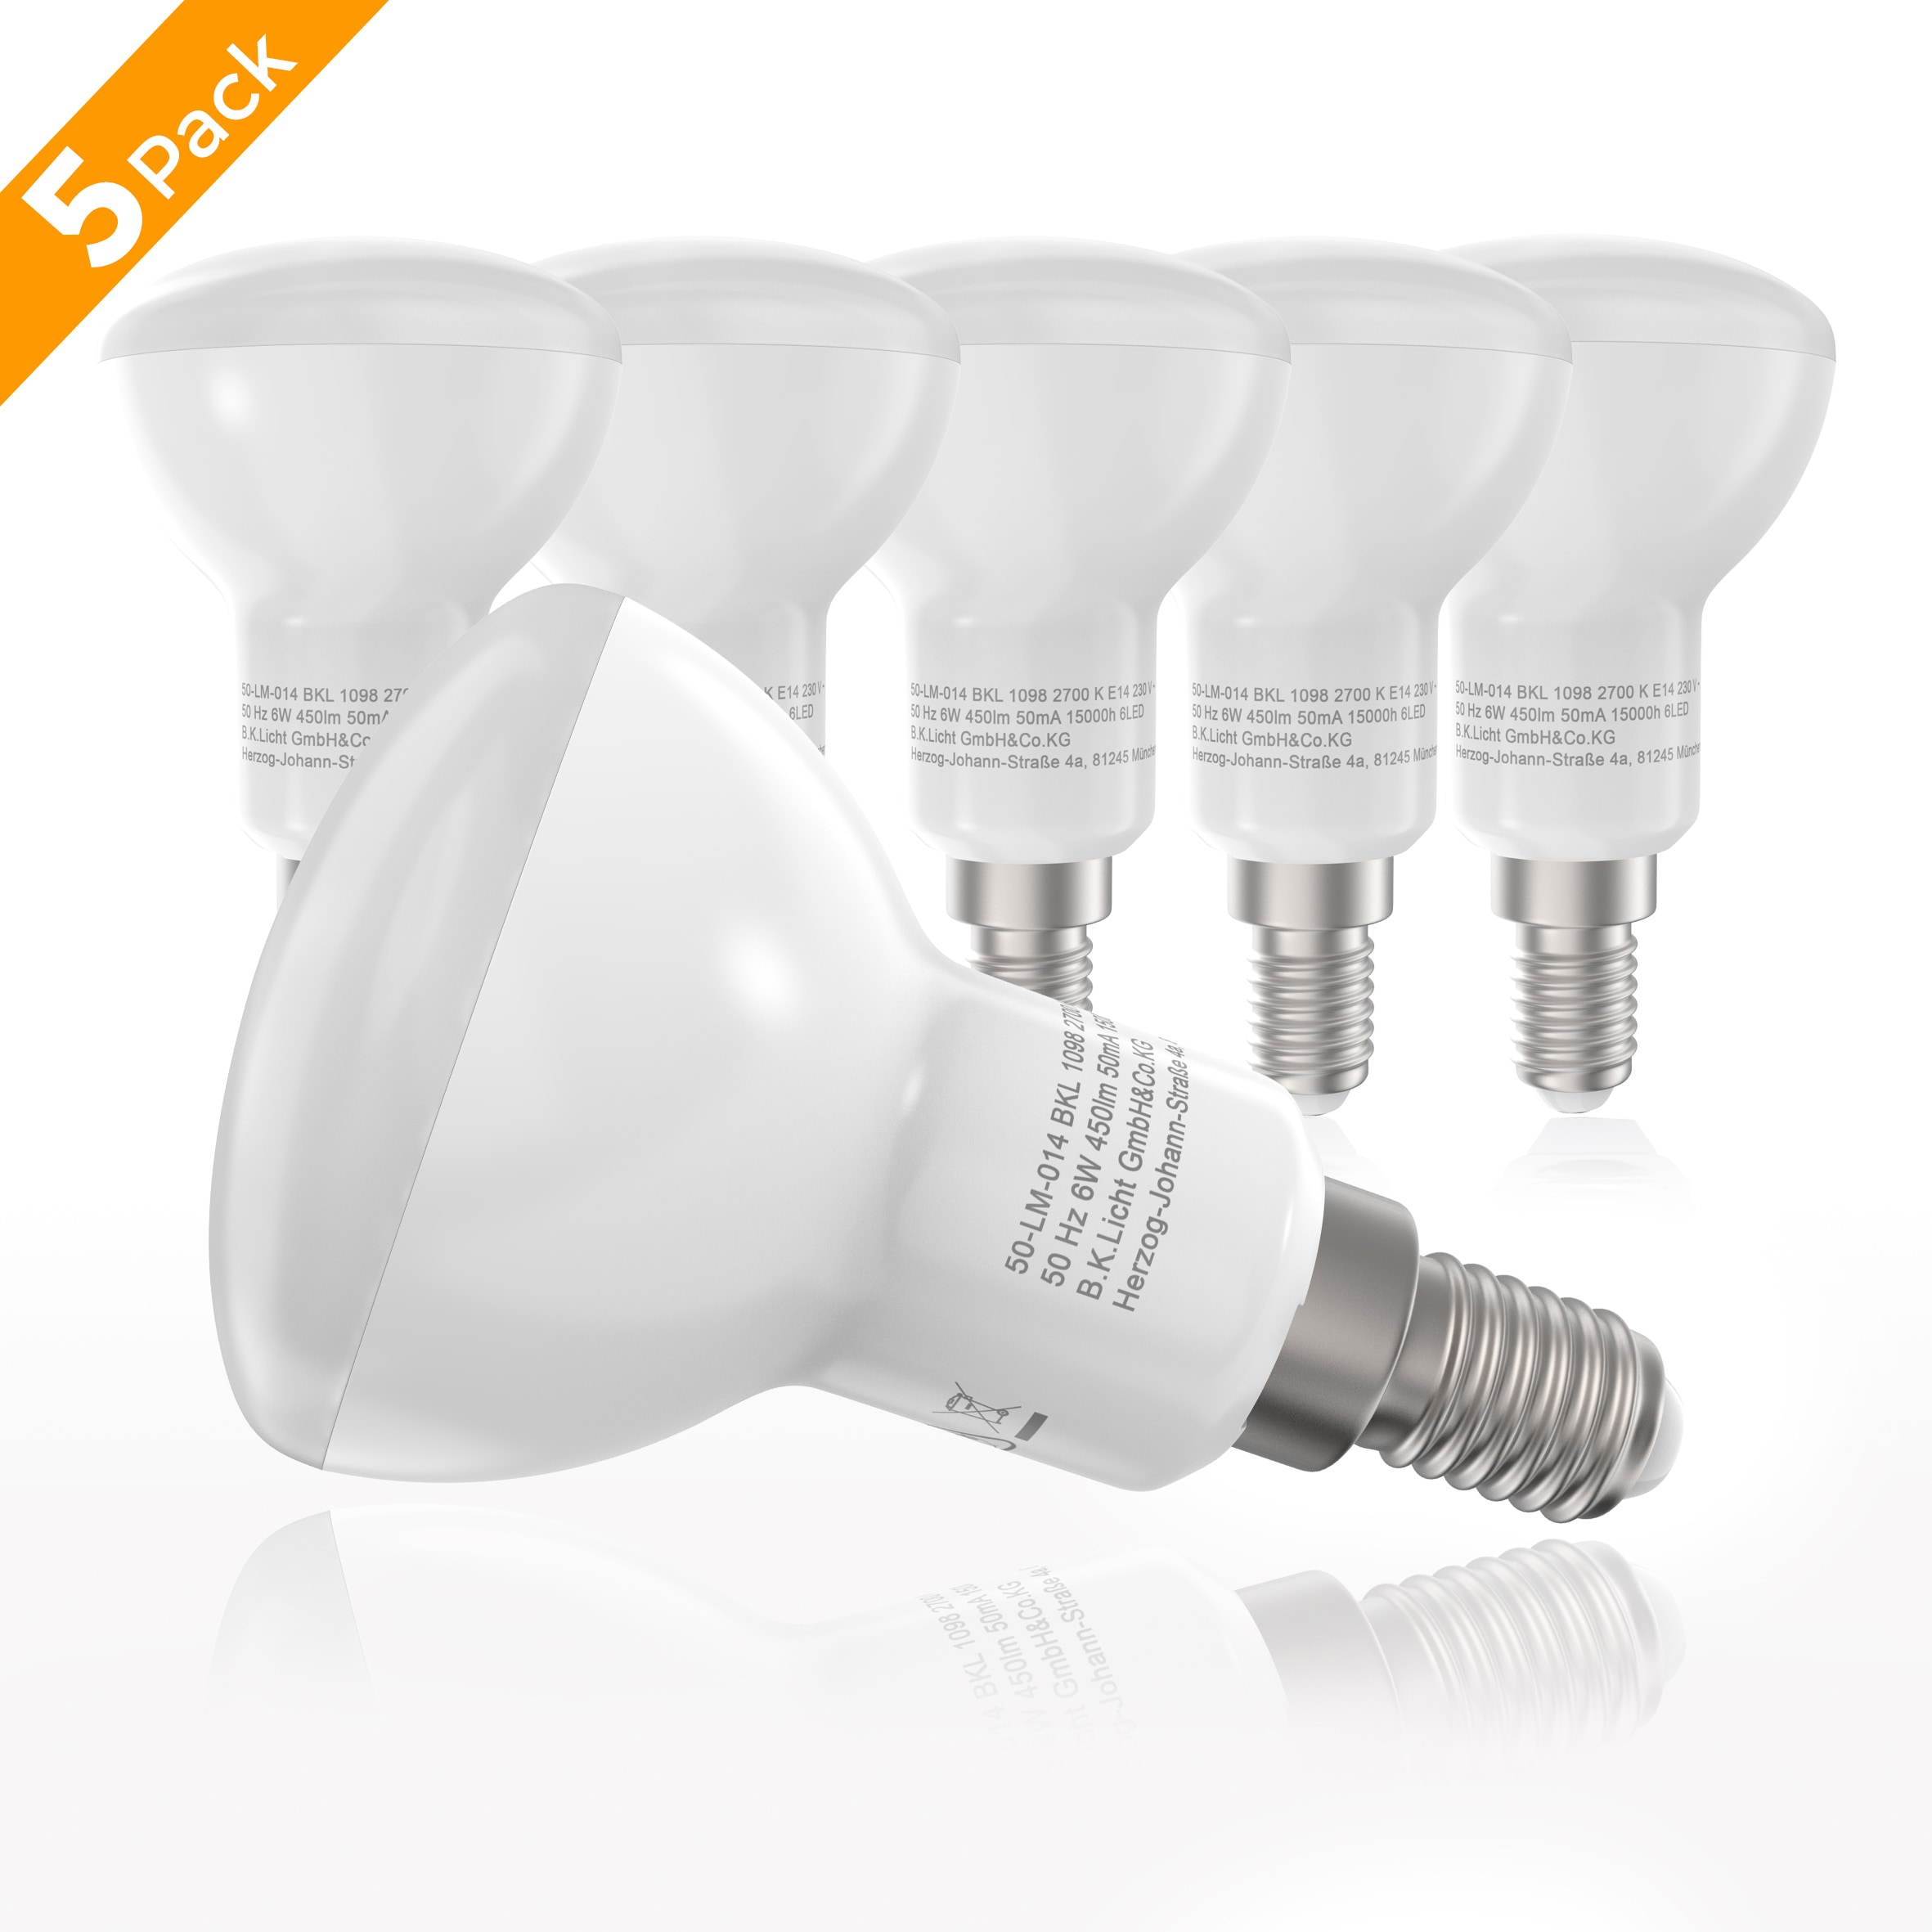 E14, Kelvin St., Glühbirne B.K.Licht Watt Rechnung LED-Lampe Warmweiß, 5 kaufen auf 6 2.700 450 Lumen Energiesparlampe LED-Leuchtmittel,